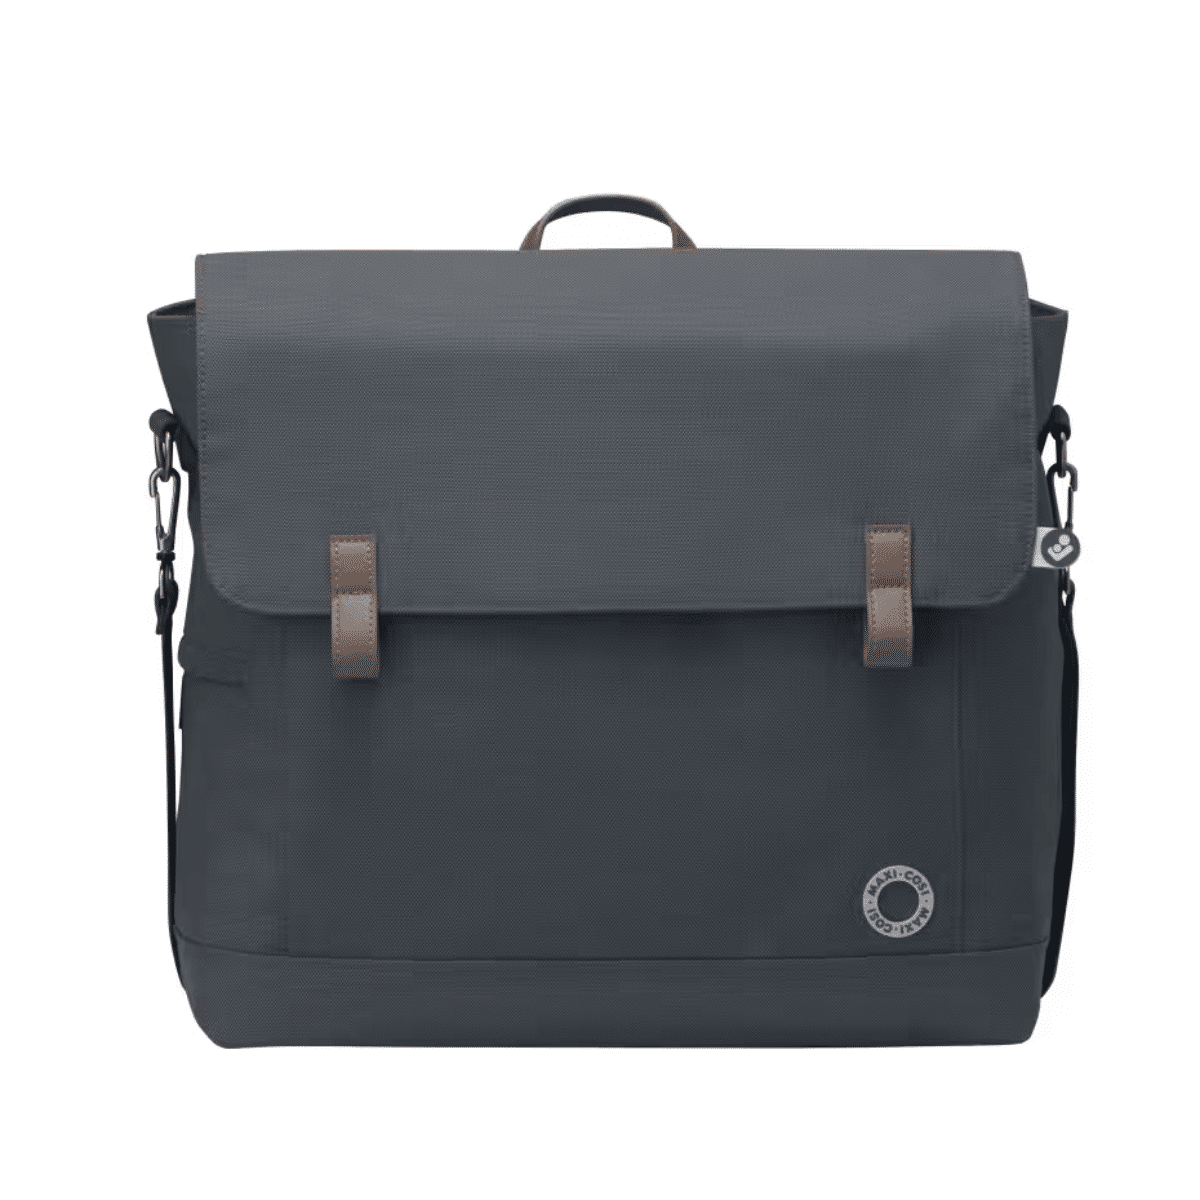 Maxi Cosi Borsa Cambio Modern Bag Essential Graphite